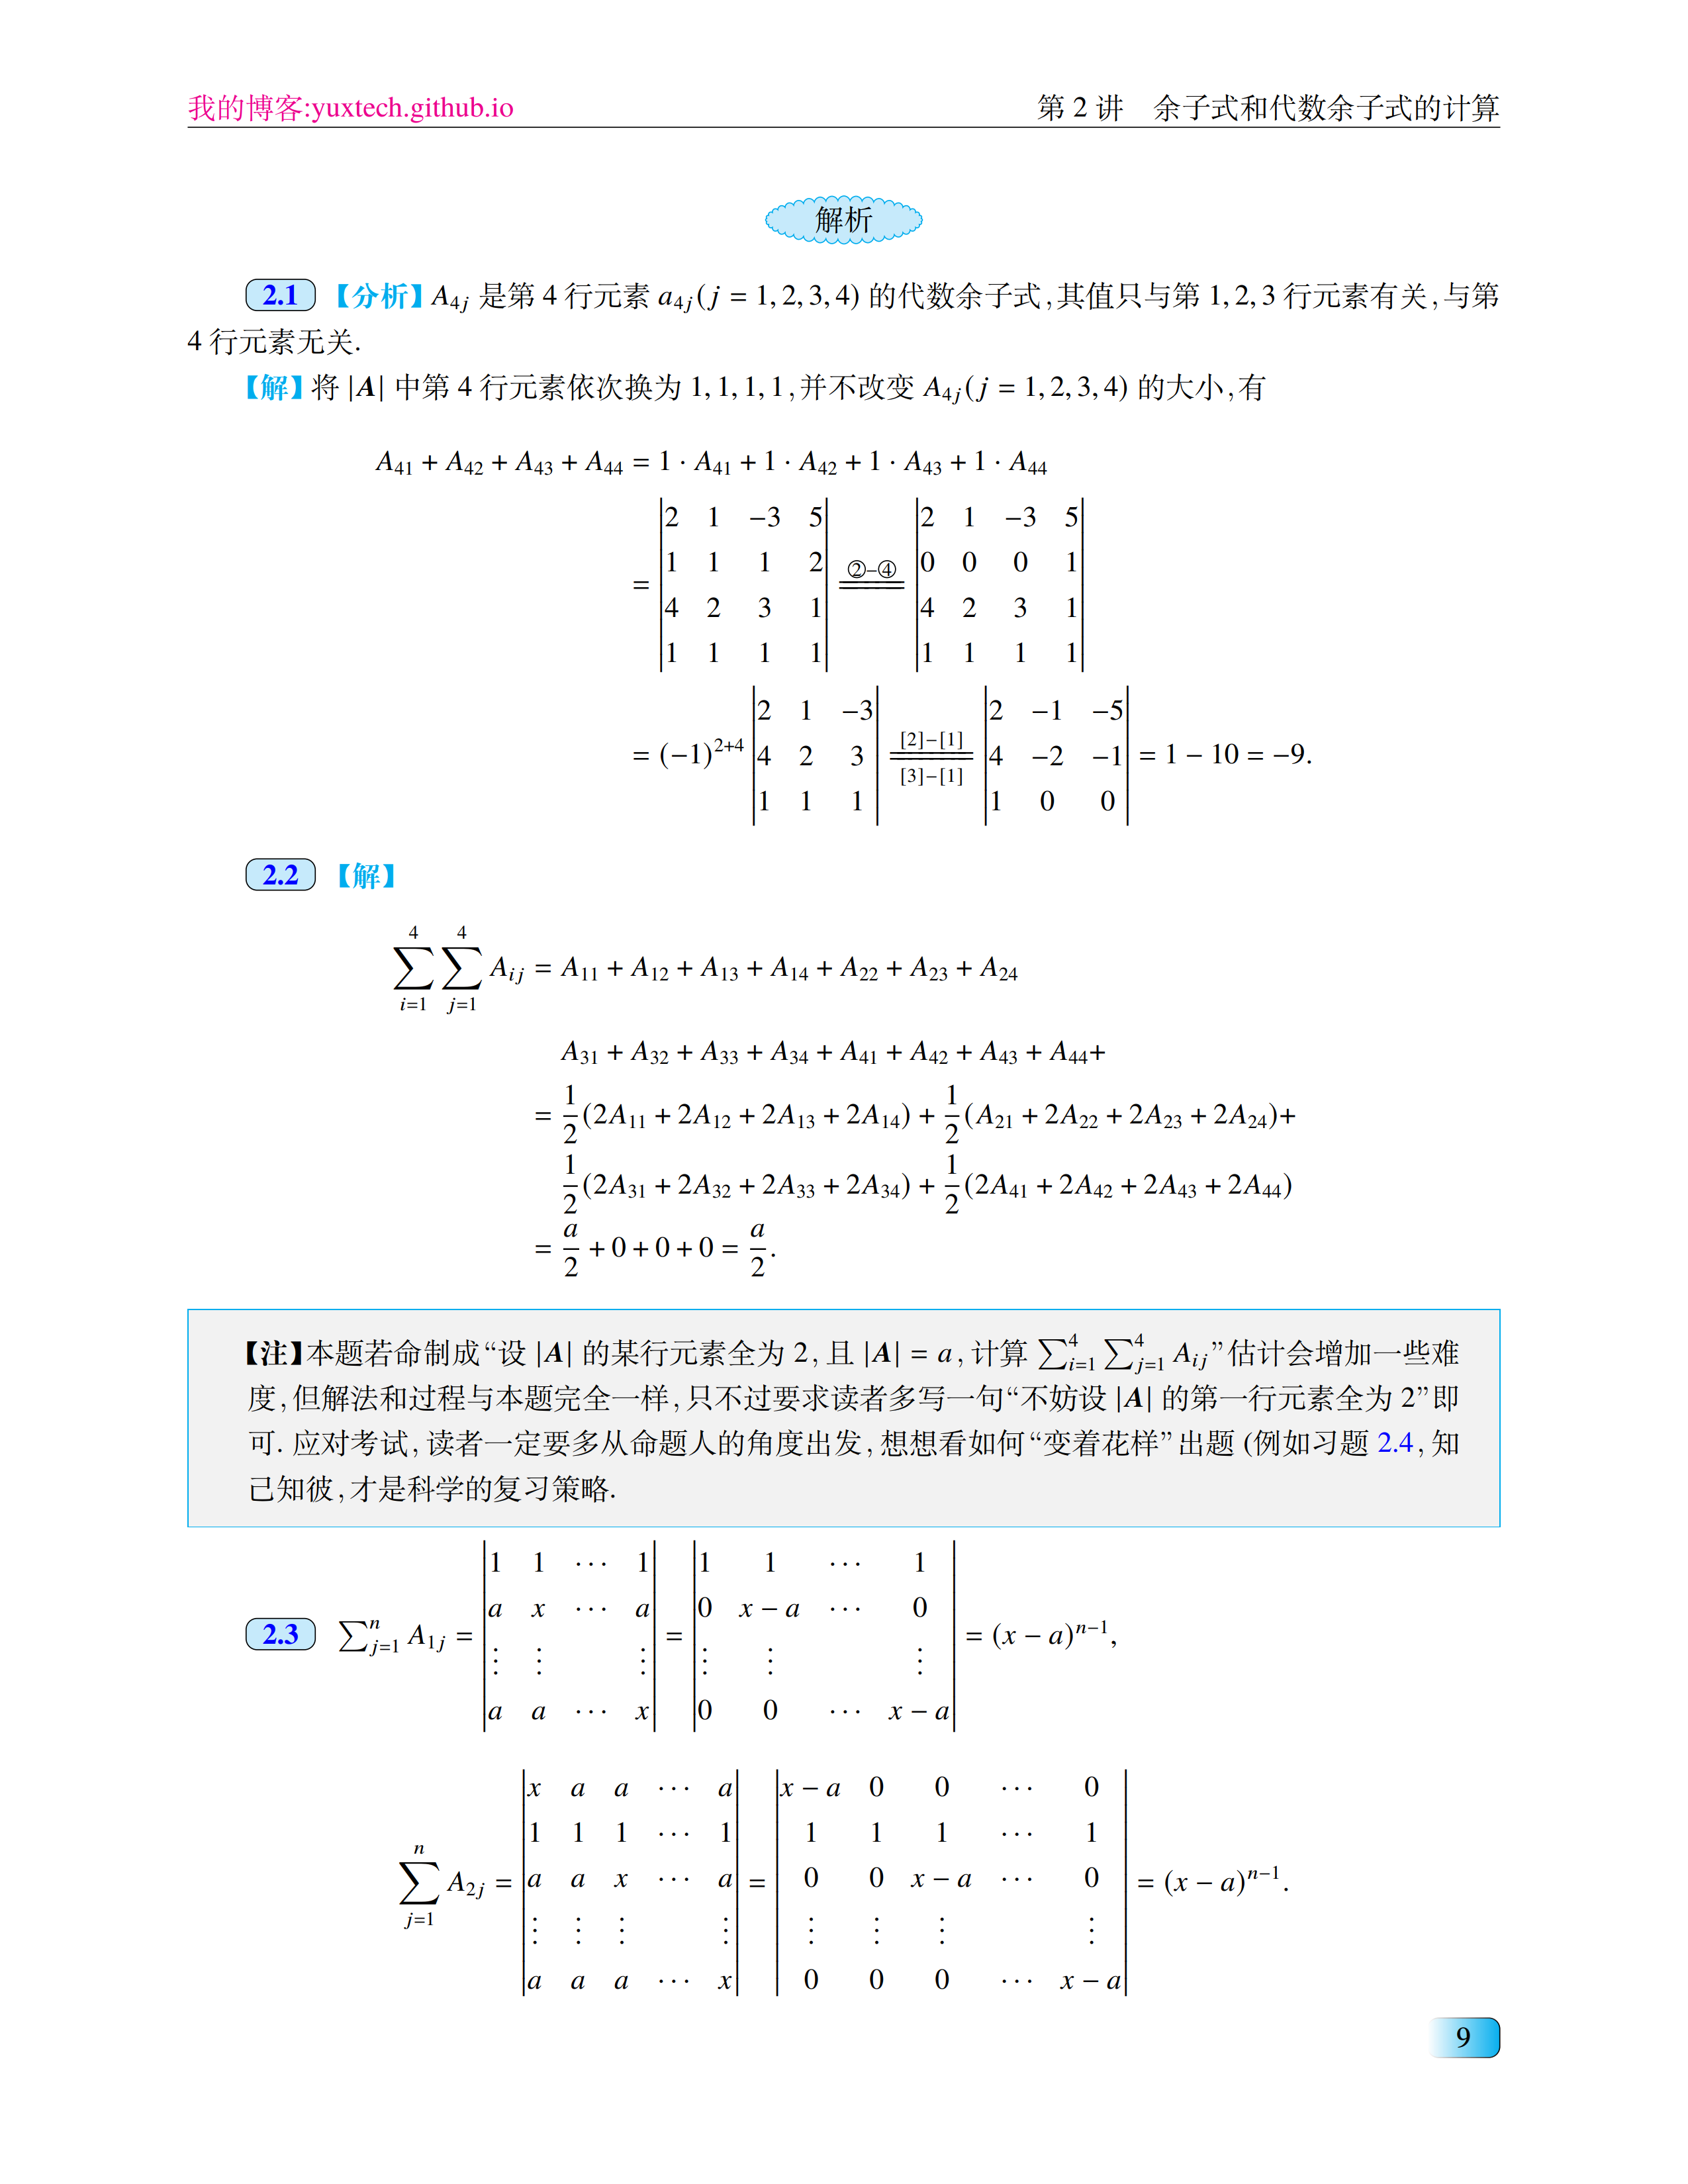 定制一个新版张宇考研数学书籍的LaTeX格式 - 向老师